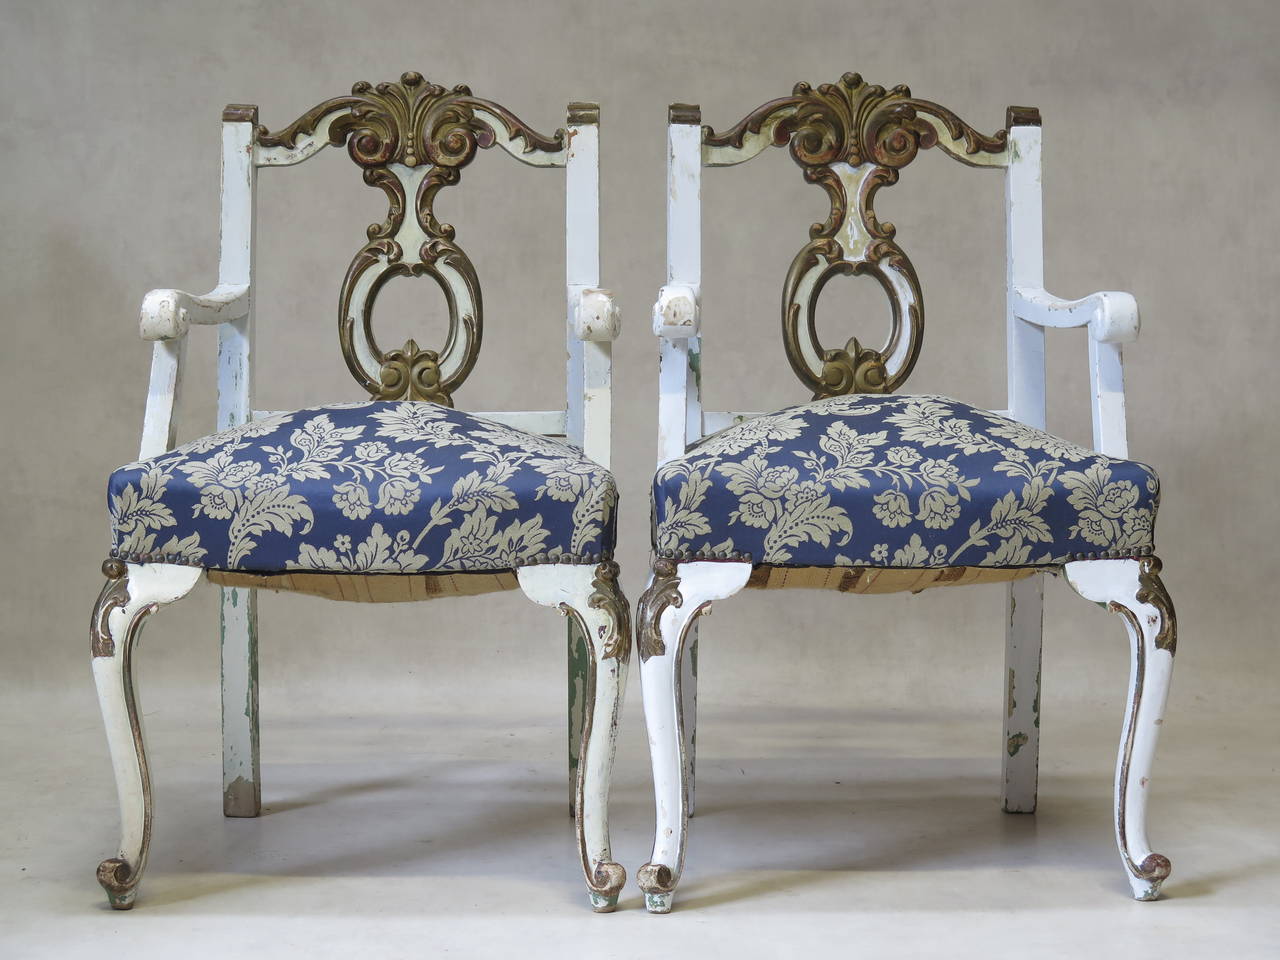 Charmante paire de fauteuils de style Louis XV du début du vingtième siècle, peints en blanc avec des accents d'or bruni, et une peinture antérieure vert clair visible en dessous. Sculpté avec audace. Les accoudoirs se terminent par des volutes.